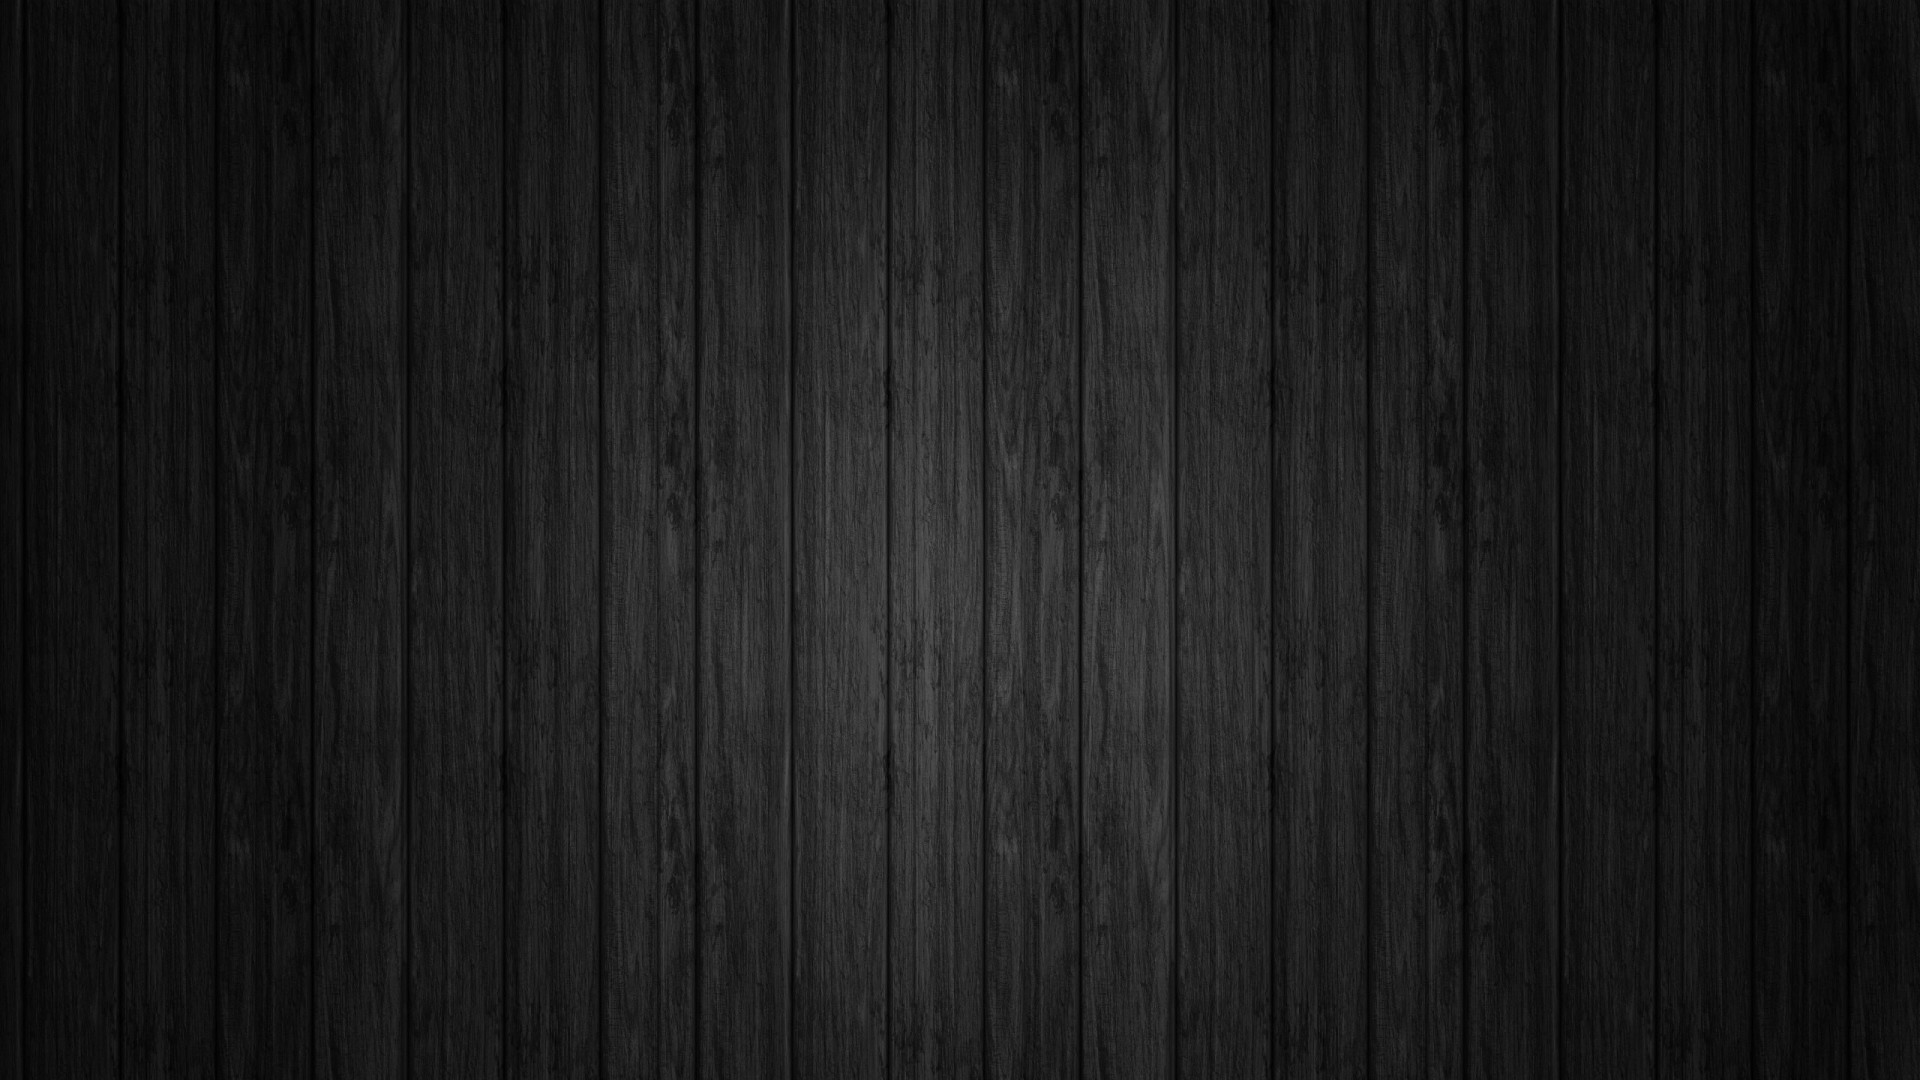 Dark Wood Texture Wallpaper for Desktop 1920x1080